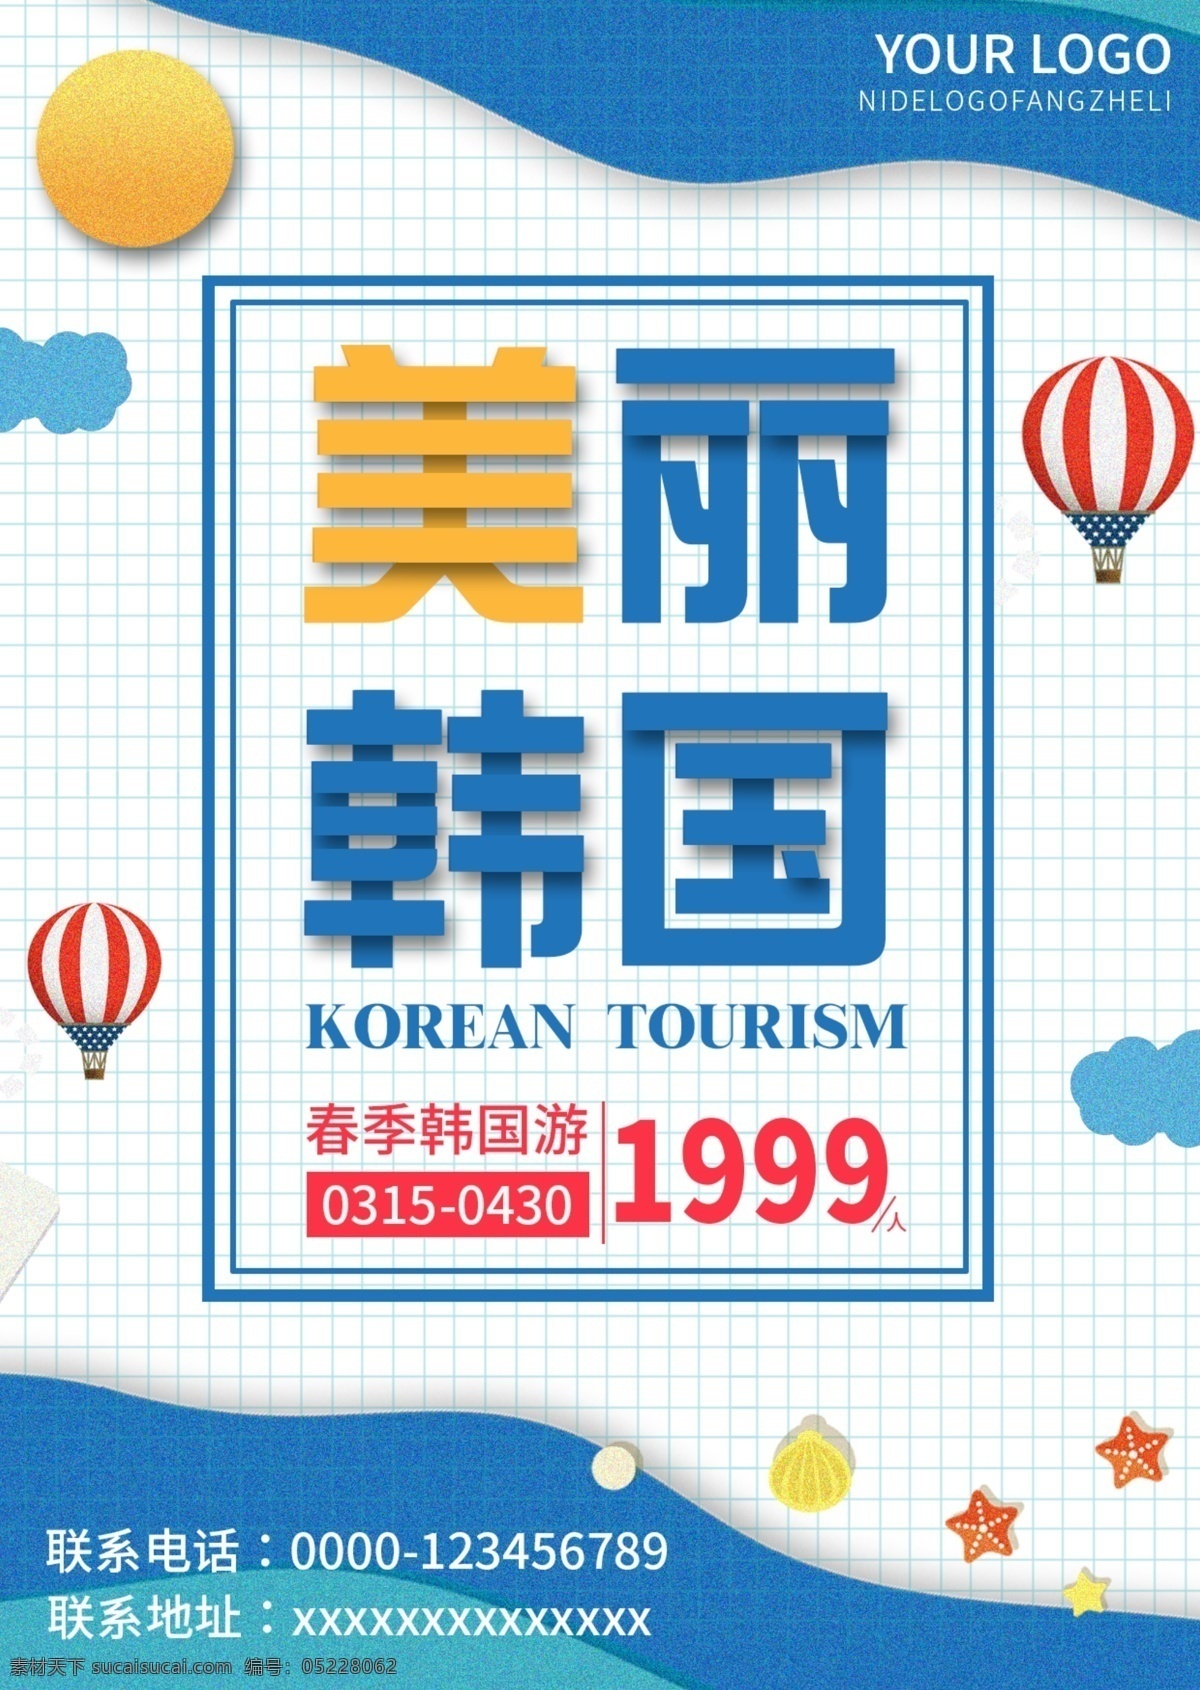 原创 插画 蓝色 简约 韩国旅游 宣传单 清新 大气 免费 模板 旅游 韩国